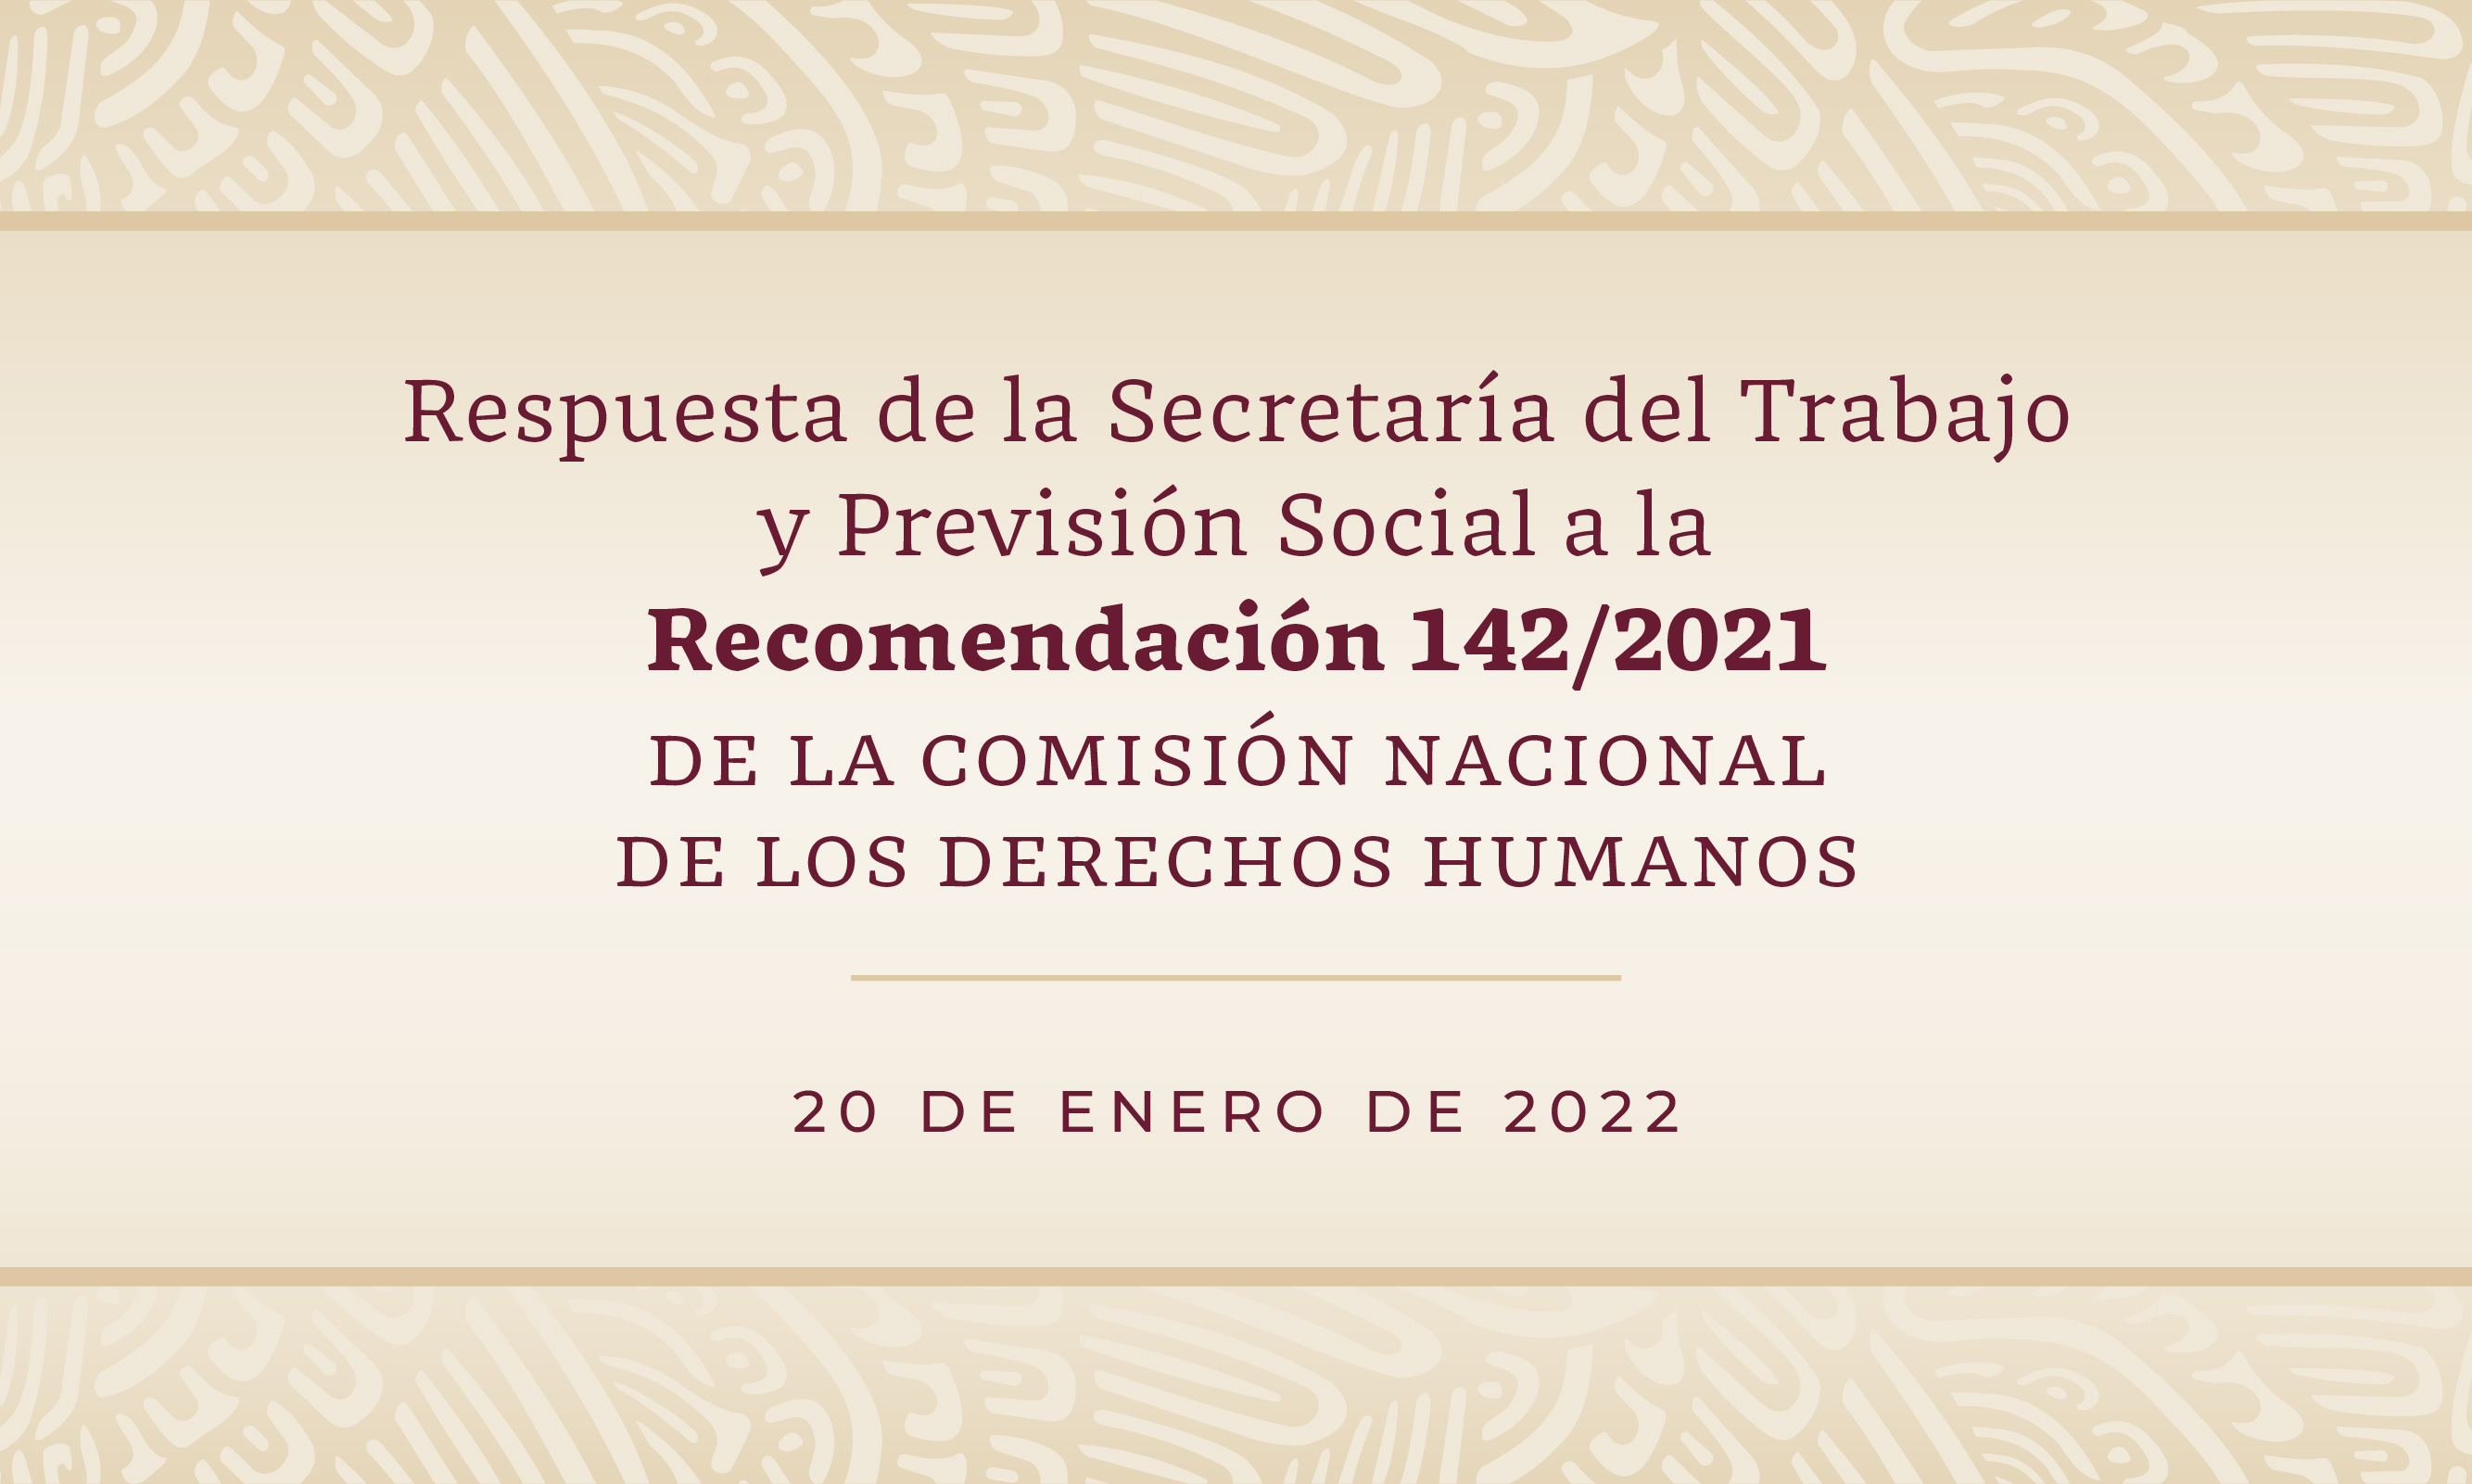 Respuesta de la Secretaría del Trabajo y Previsión Social a la recomendación 142/2021 de la Comisión Nacional de los Derechos Humanos